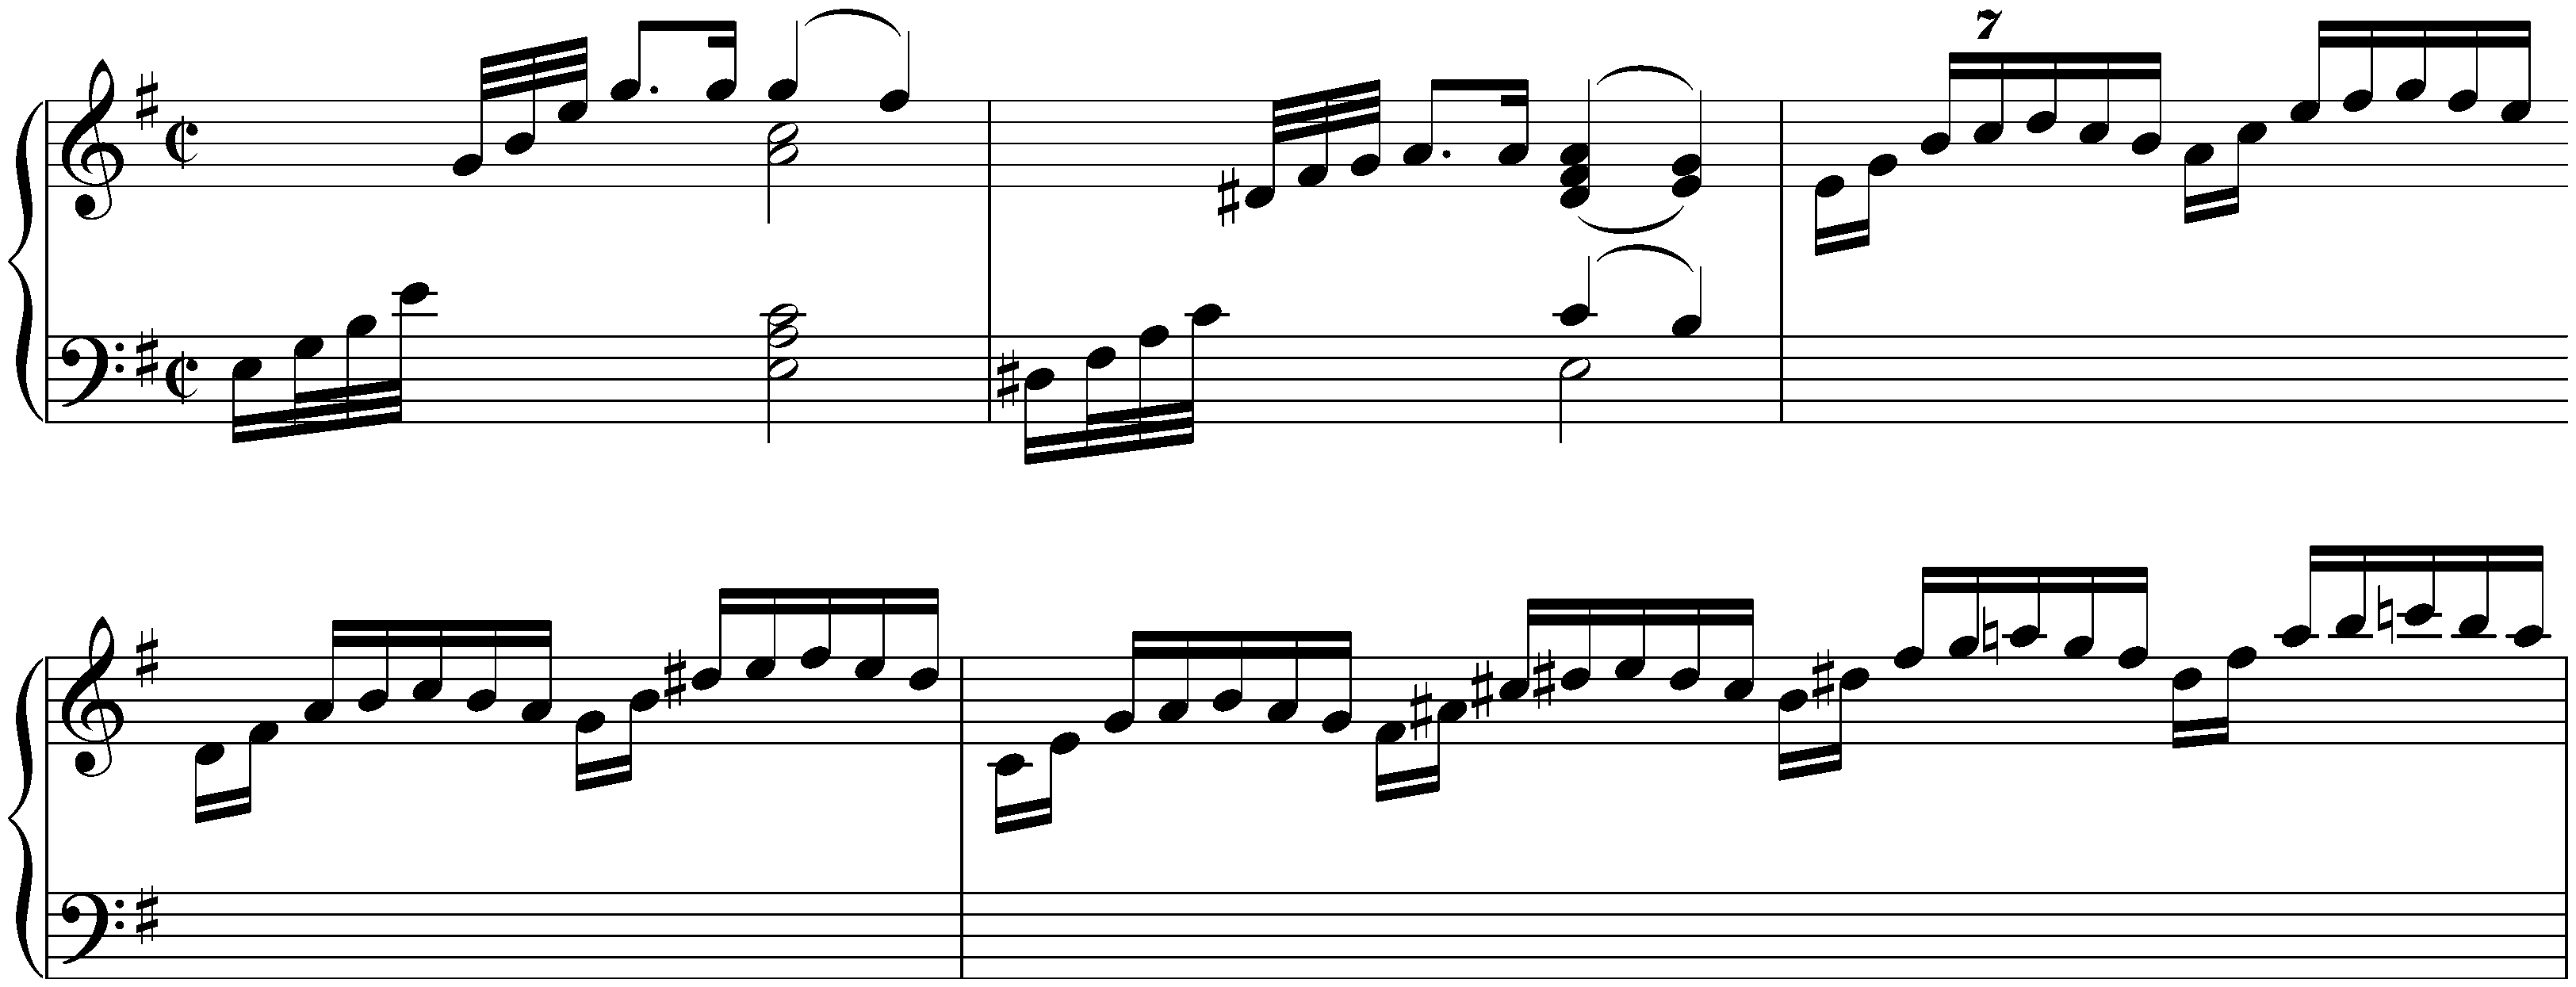 Partita no. 6 in E minor, BWV 830; 1. Toccata